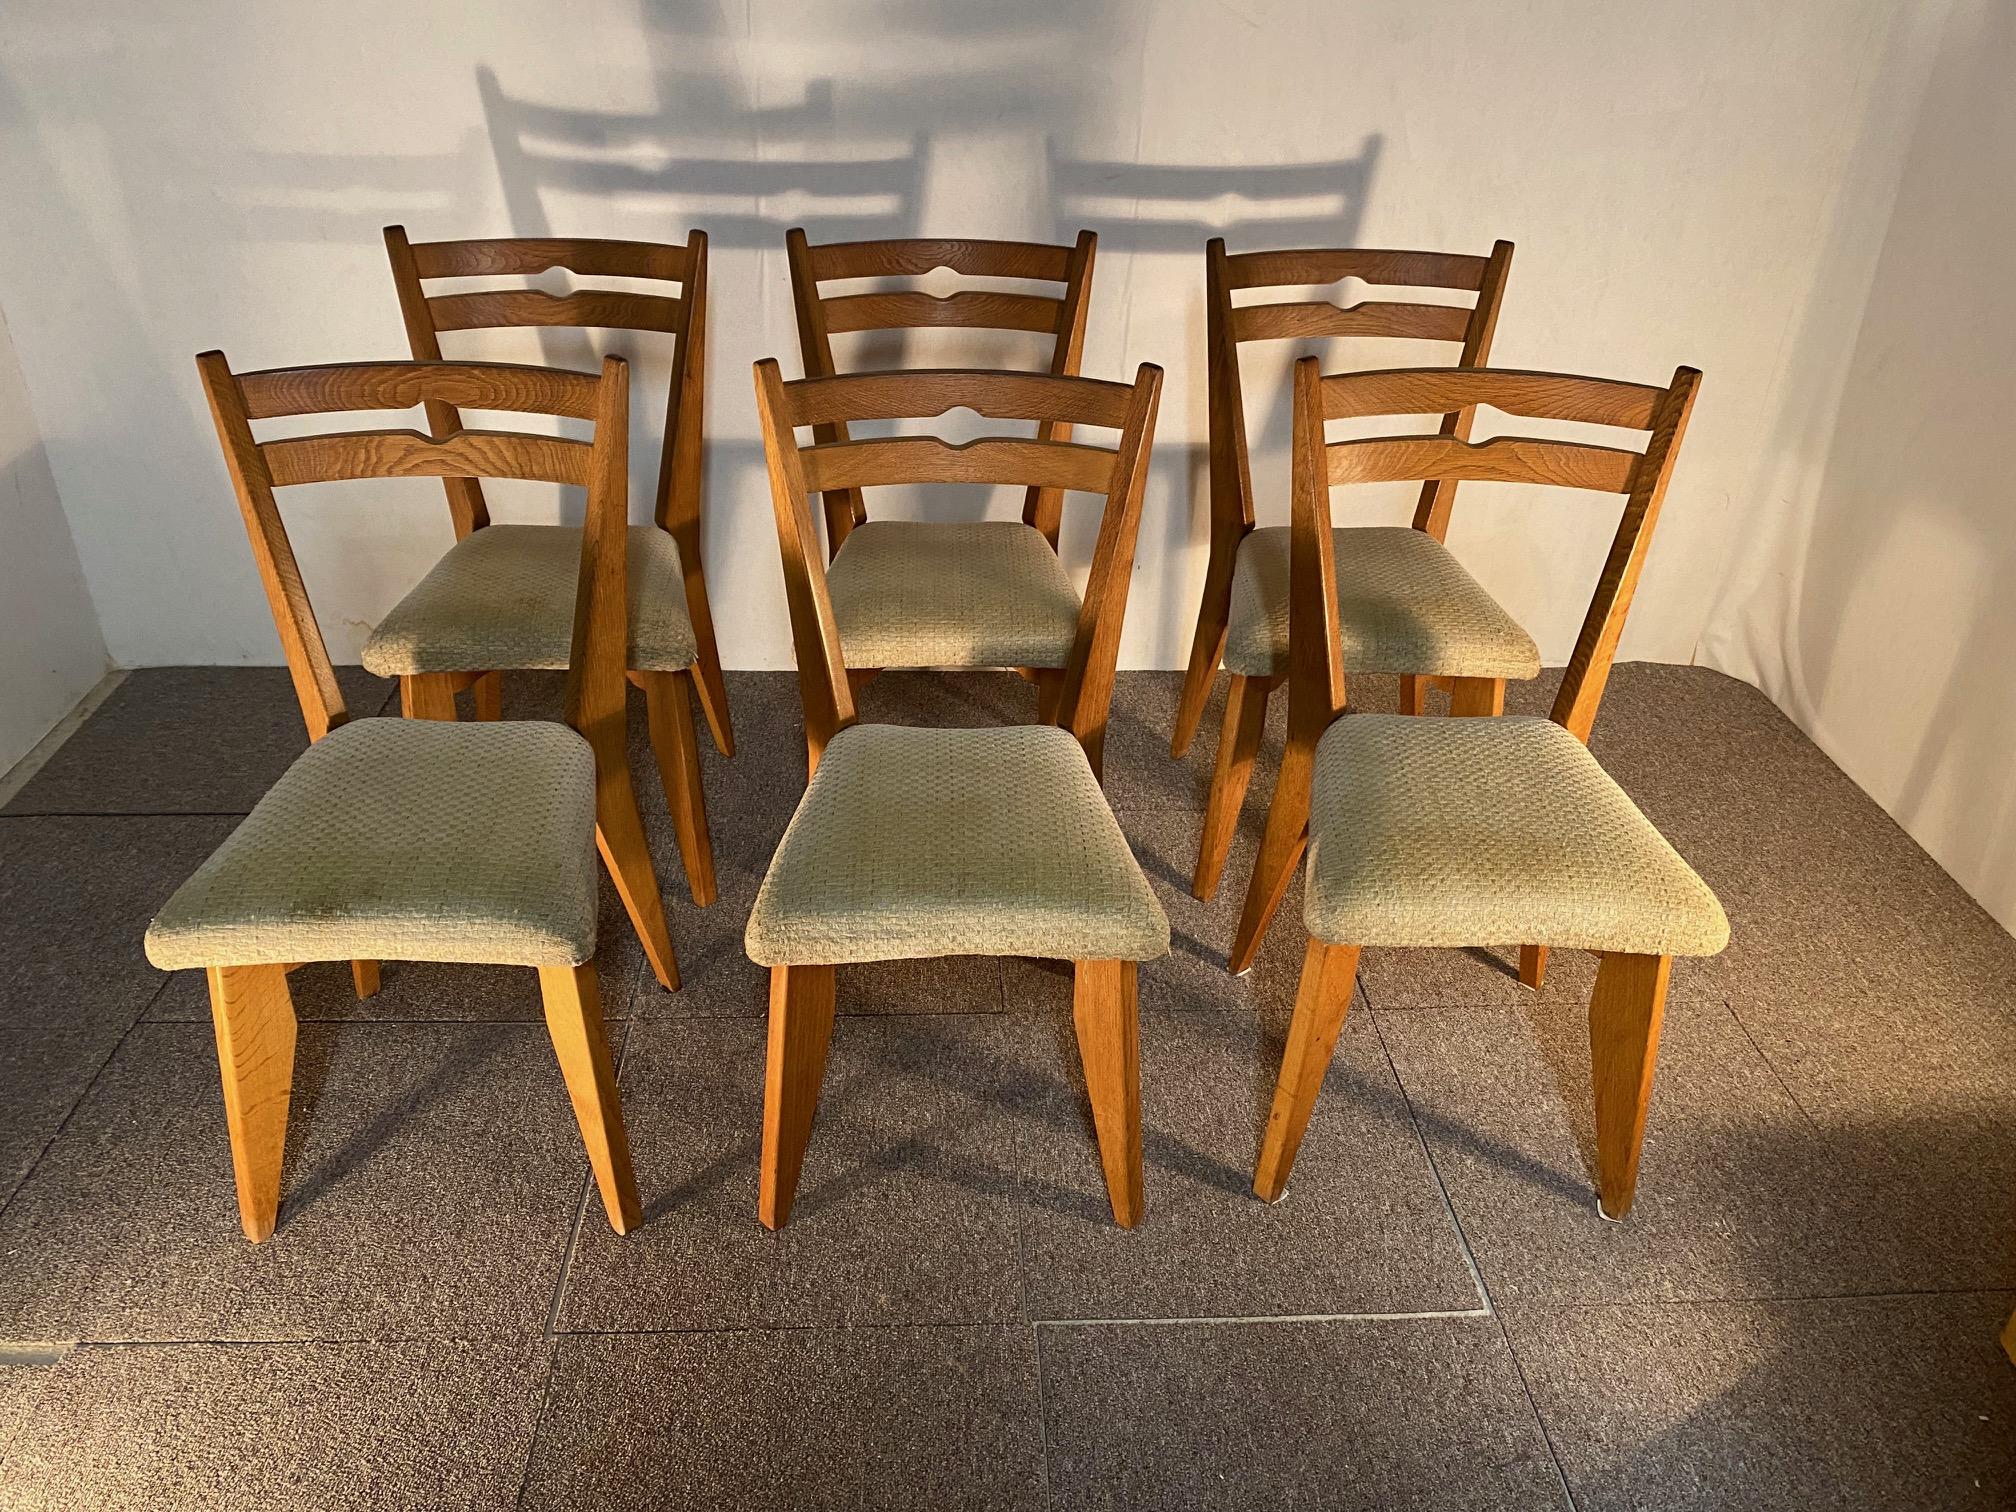 Sechs Stühle, Guillerme und Chambron aus Eiche, aus den 1960er Jahren.
Sechs Stühle, Guillerme und Chambron aus Eiche, aus den 1960er Jahren.
Sie sind in gutem Zustand.

Robert GUILLERME (1013-1990) und Jacques CHAMBRON (1914-2001) lernten sich